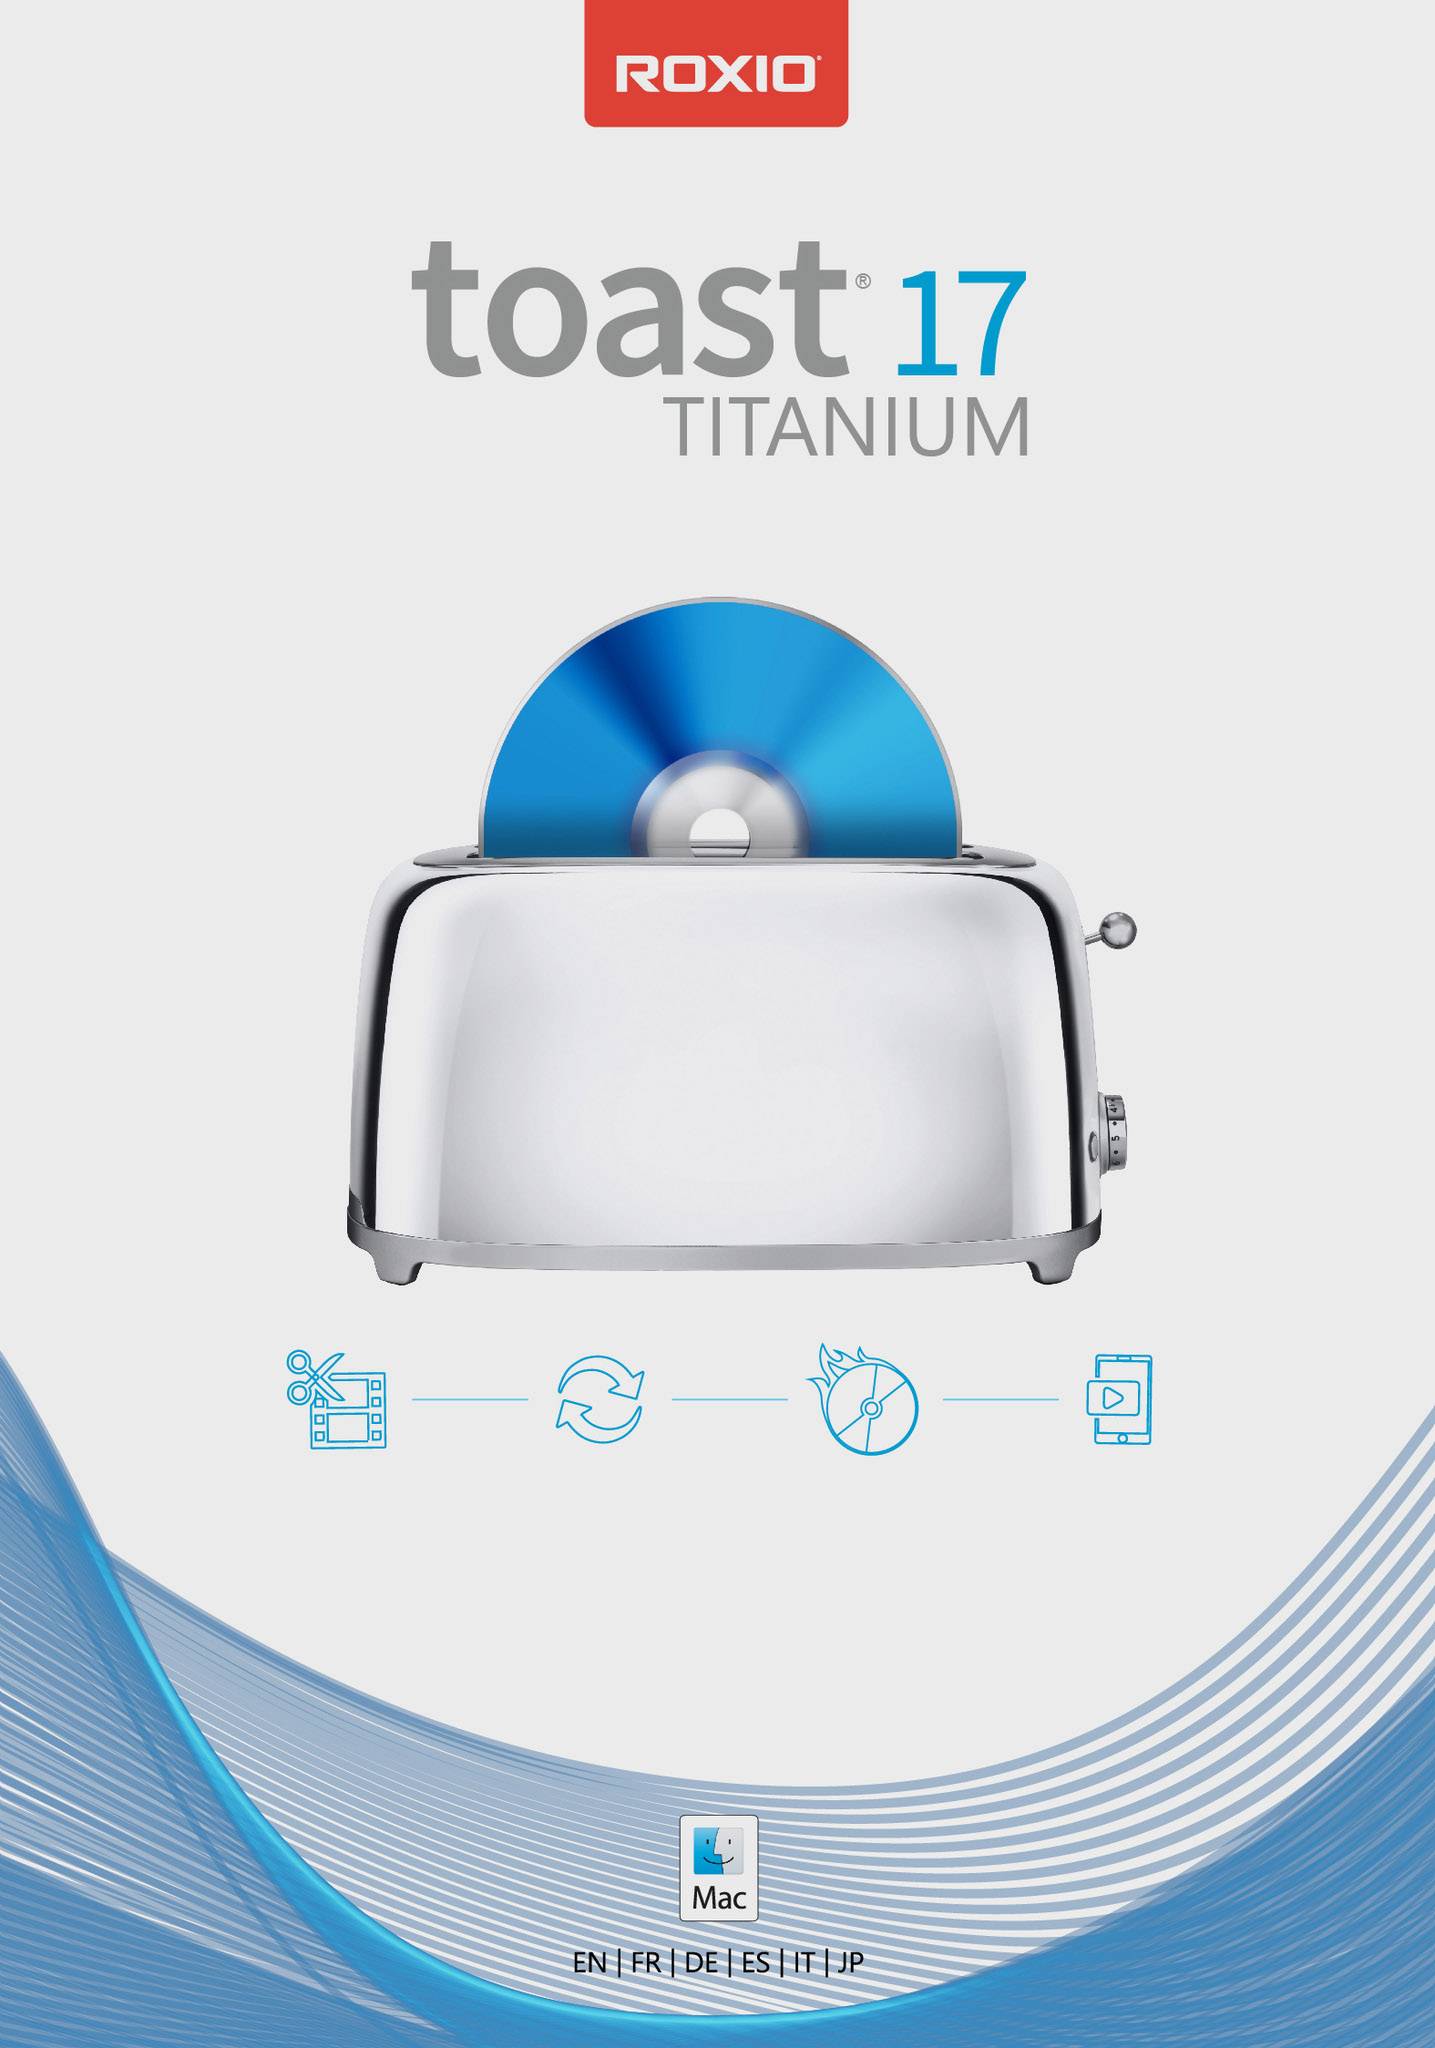 roxio toast titanium download